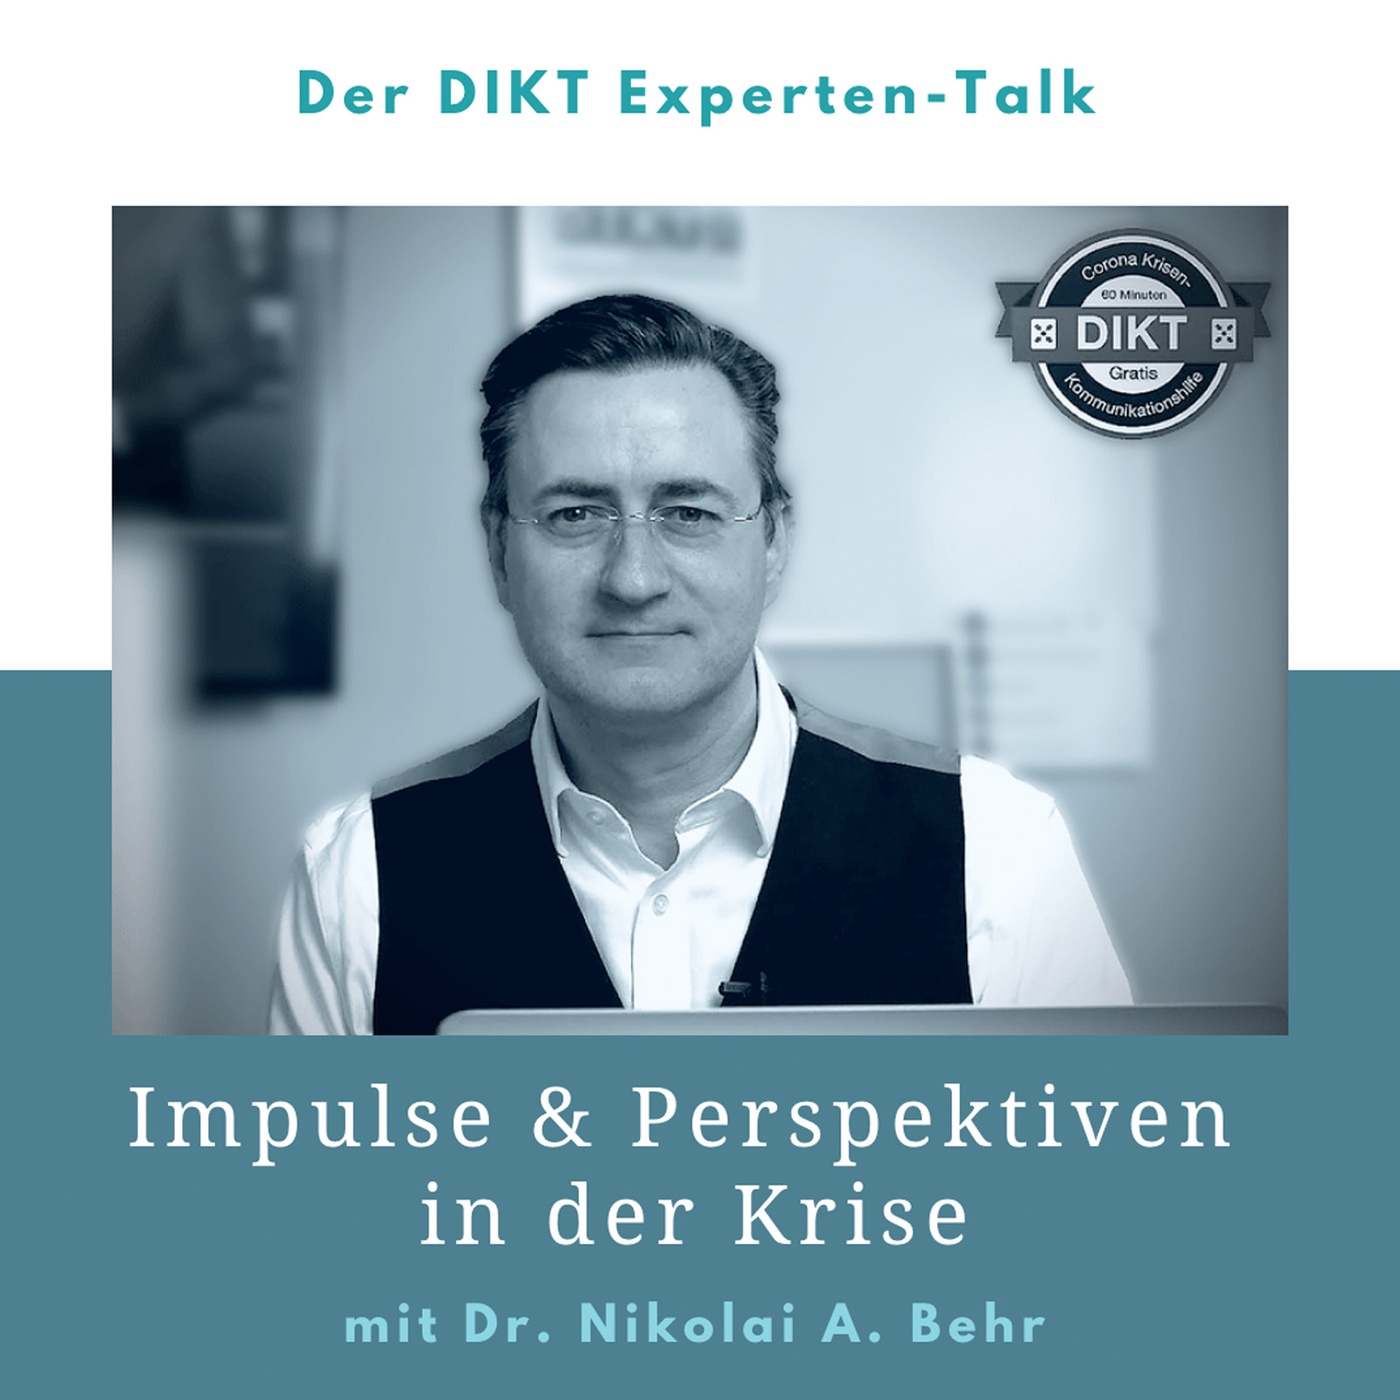 Impulse & Perspektiven in der Krise - DIKT Experten-Talk mit Dr. Nikolai A. Behr